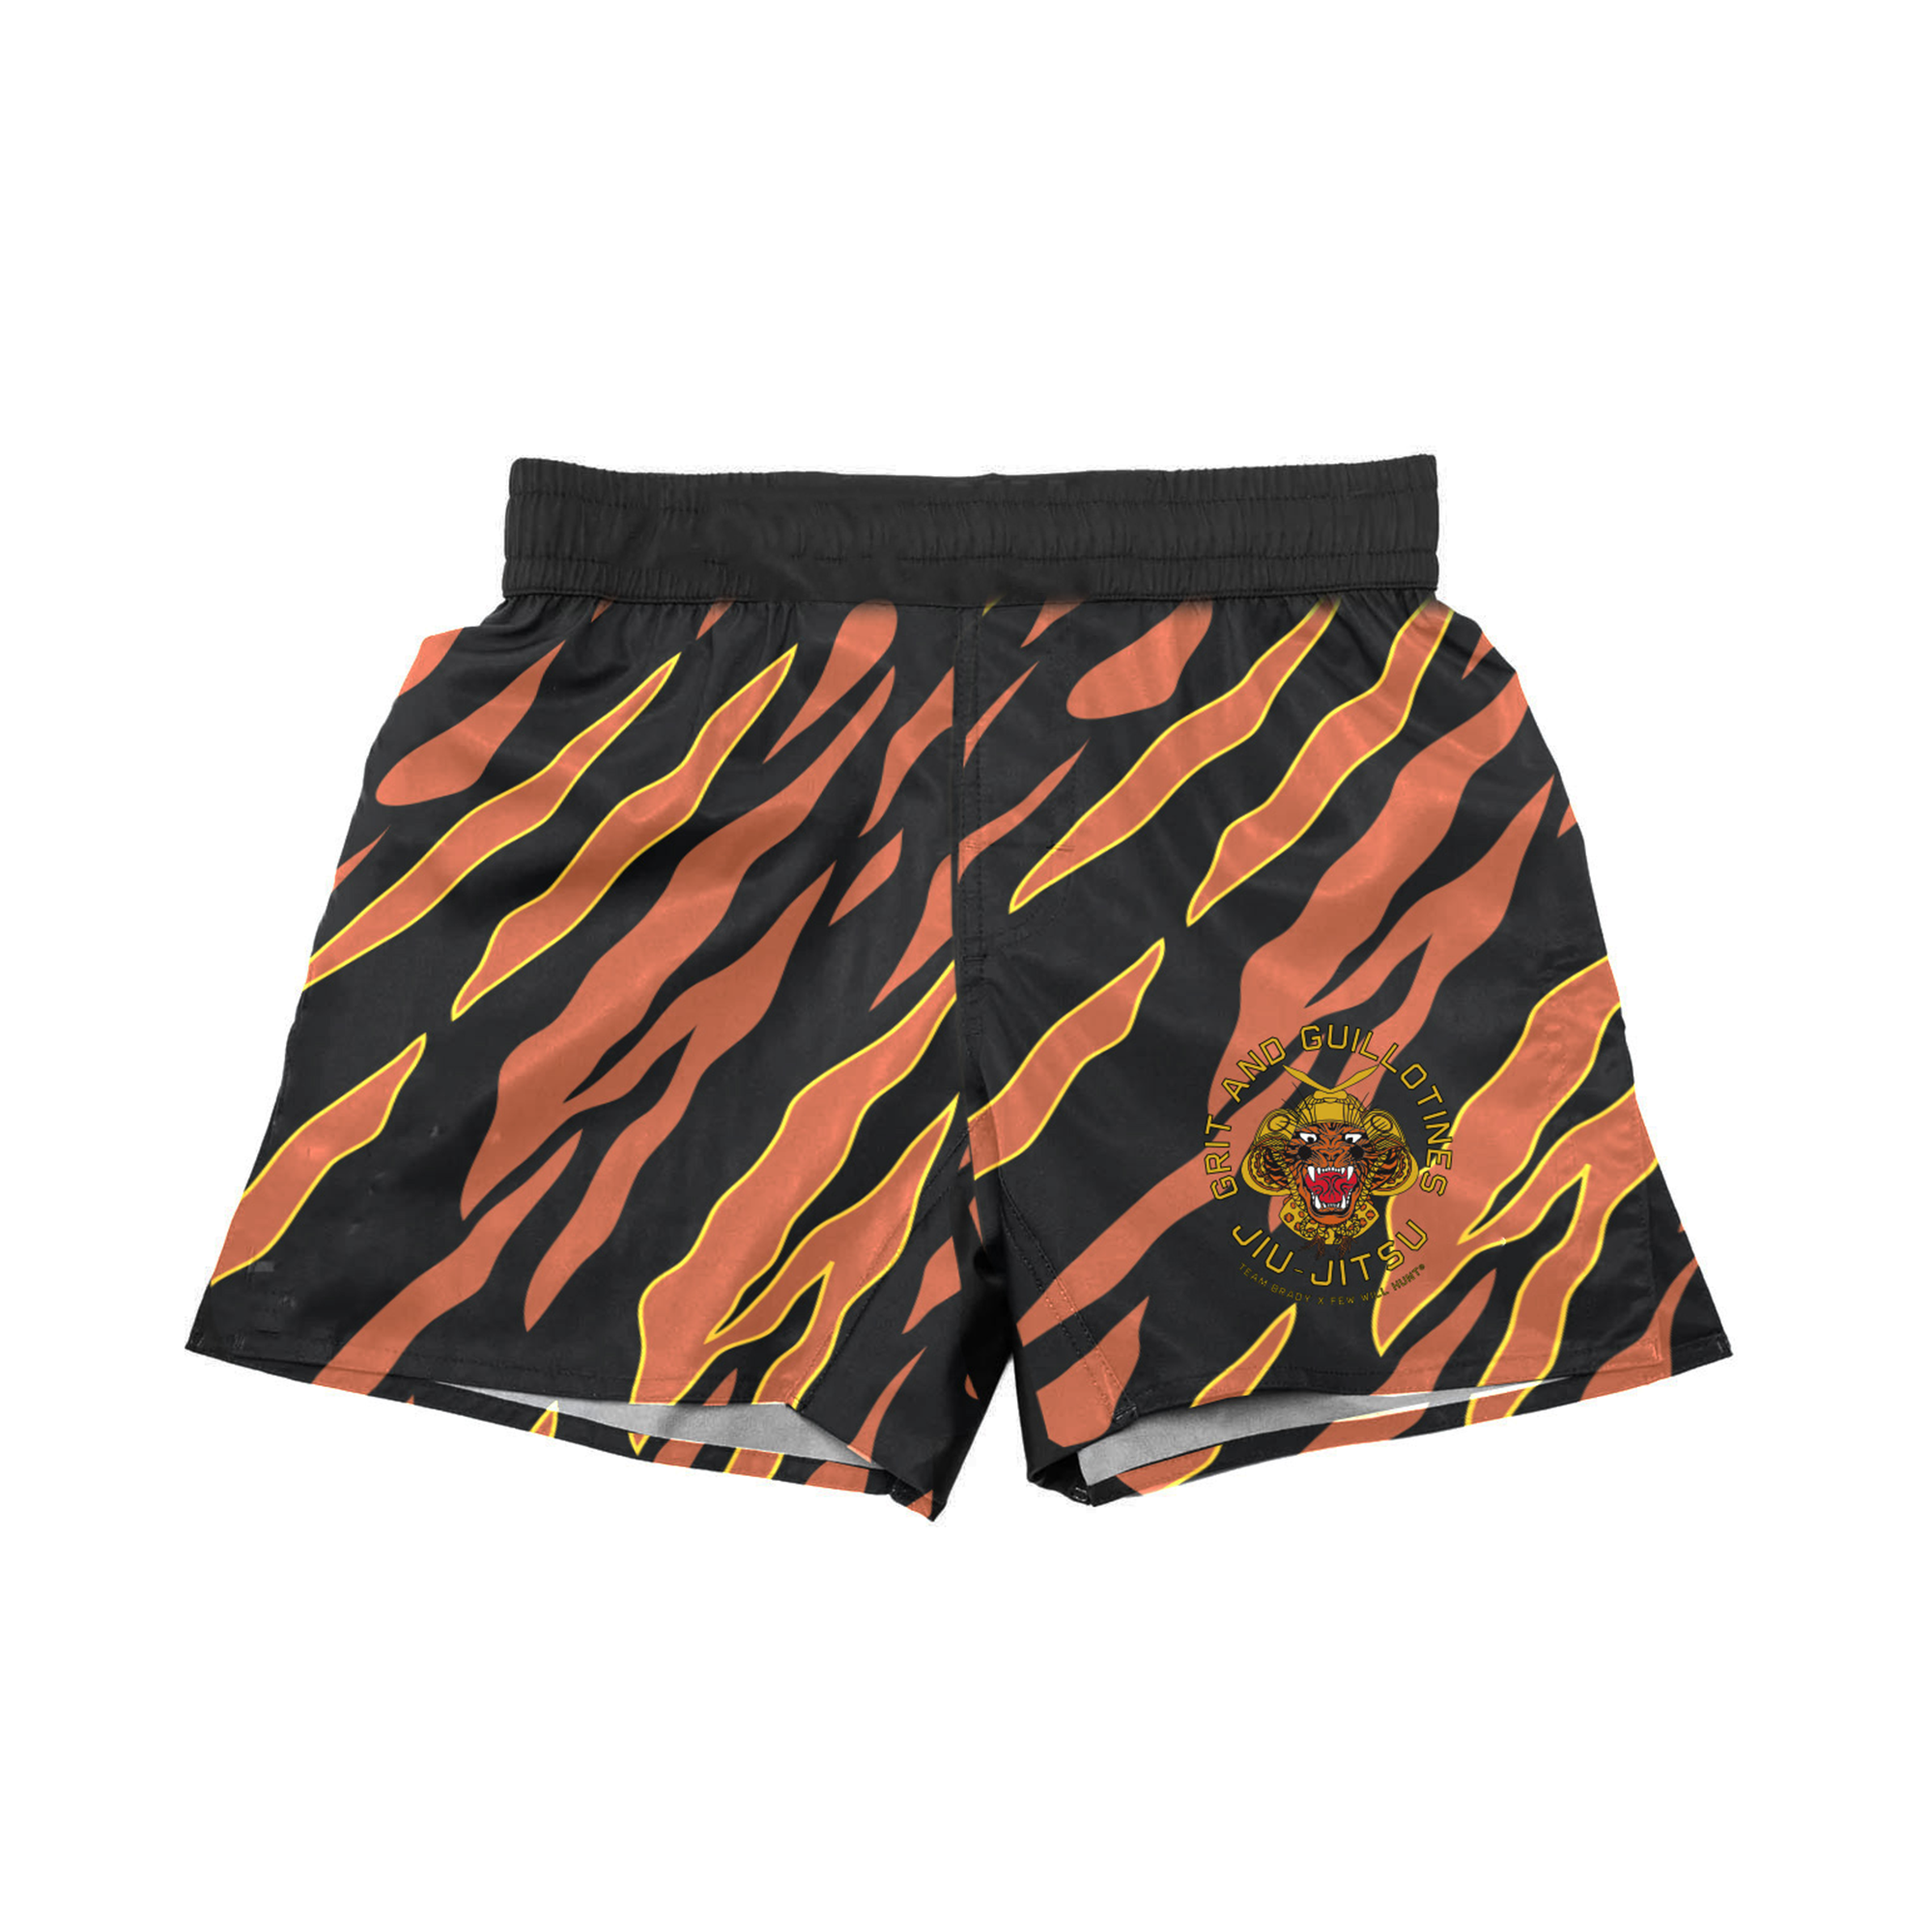 Tiger Cross Combat Shorts